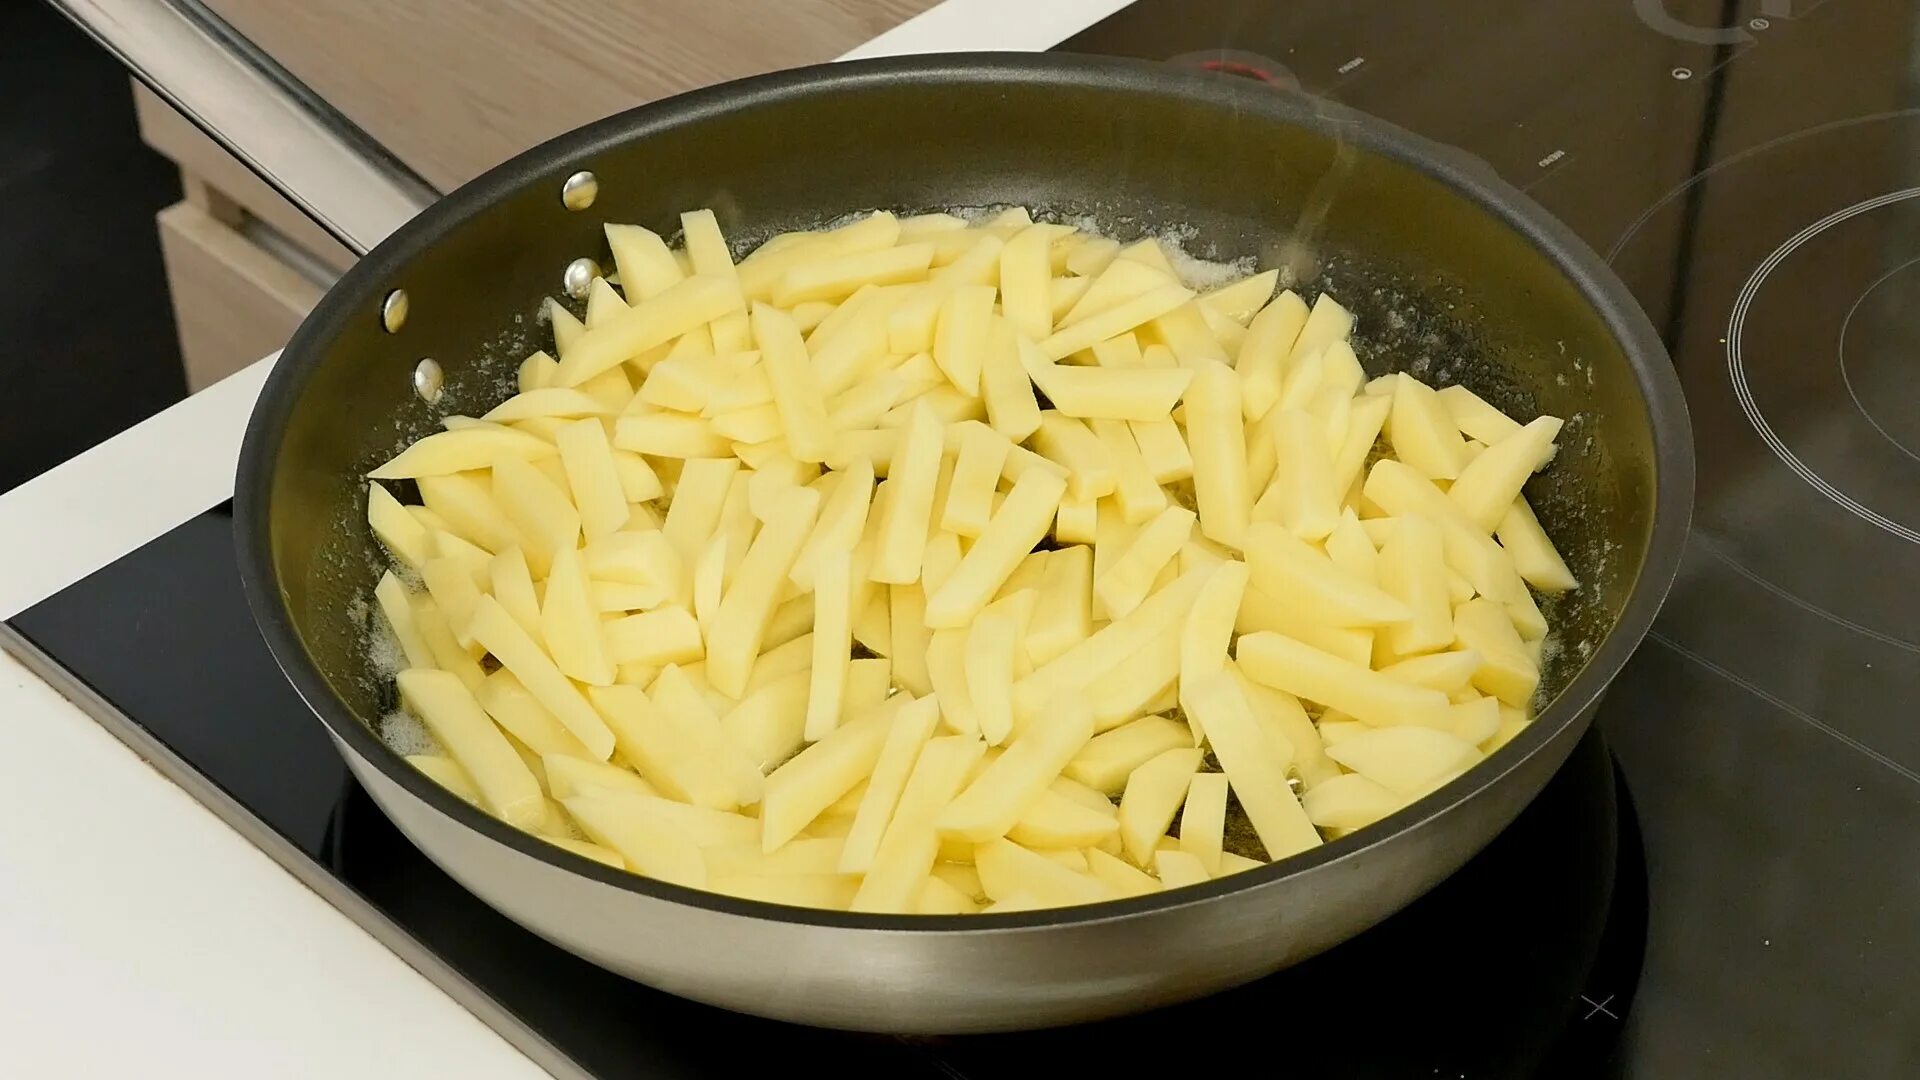 Жареная картошка на сковороде. Картошка в плоской сковородке. Жареная картошка на сливочном масле на сковороде. Картофель для жарки зеленый.